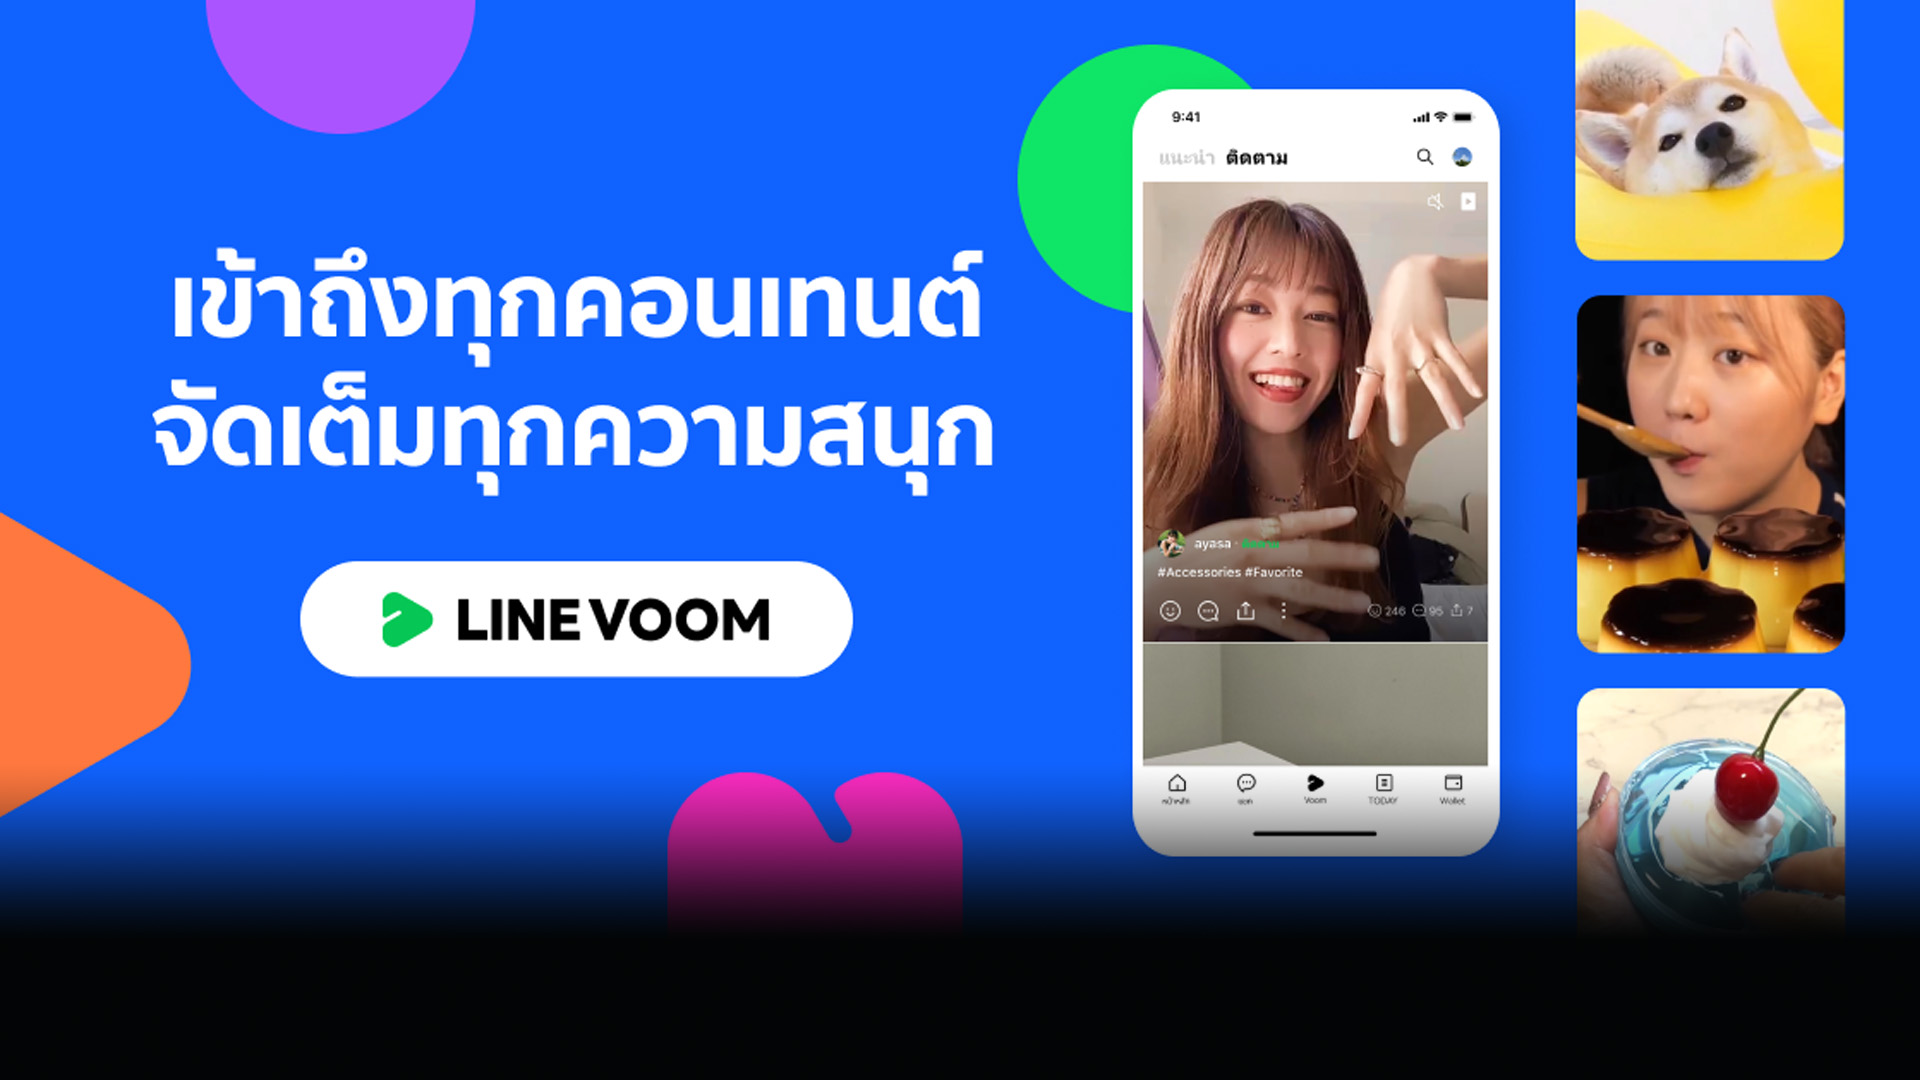 LINE ส่งบริการใหม่ “LINE VOOM” แพลตฟอร์มวิดีโอสั้น เพิ่มประสบการณ์ความสนุกแบบไร้รอยต่อ